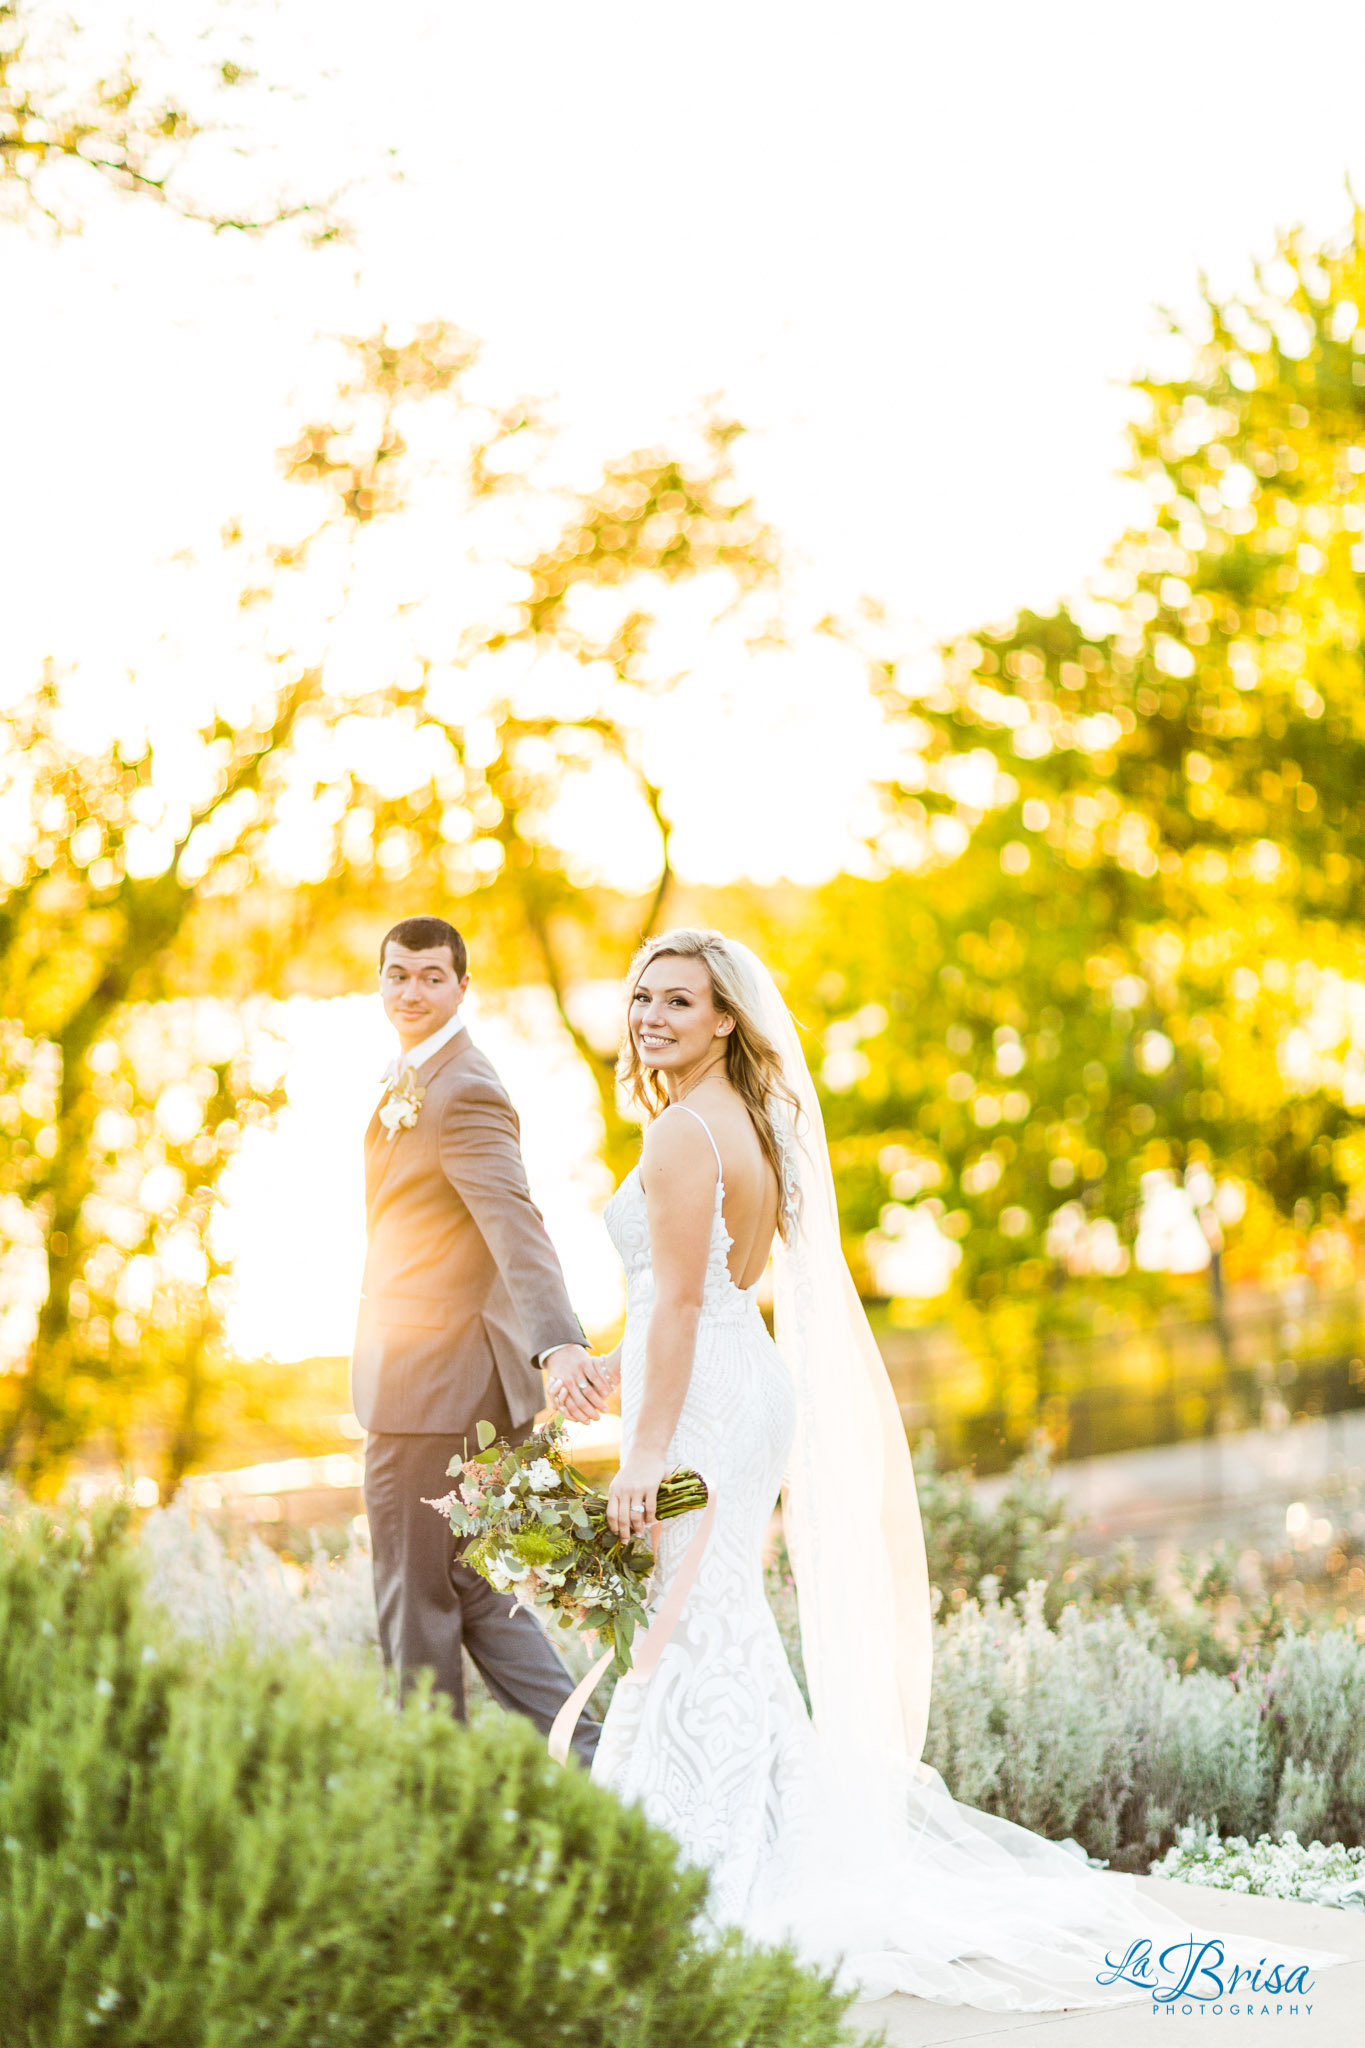 Lucy & Tanner’s Dallas Arboretum & Botanical Garden Wedding